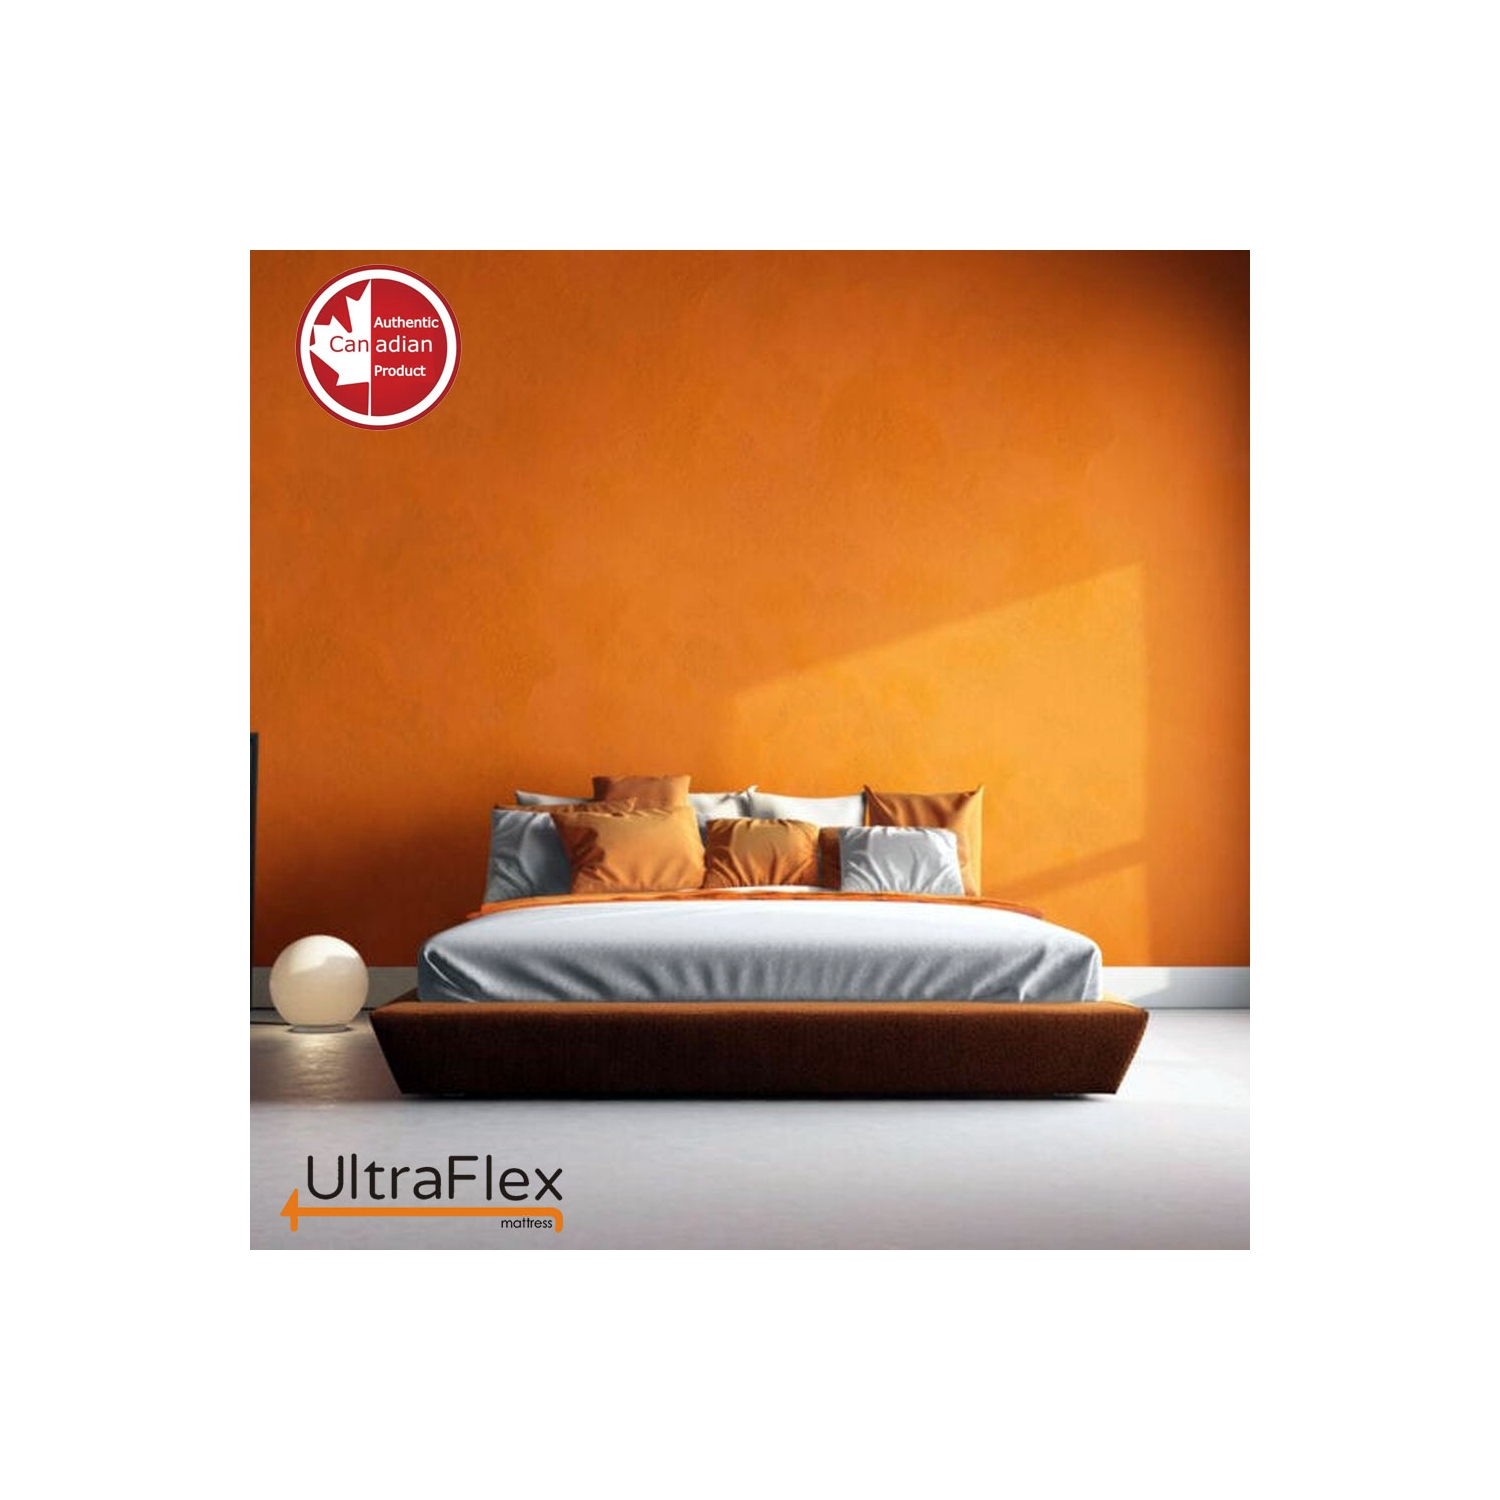 UltraFlex ASPIRE- Supportive Comfort Foam Mattress for Pressure Relief, Cool Sleep, Medium Firmness, Premium Cool Gel Memory Foam (Made in Canada)- Queen Size